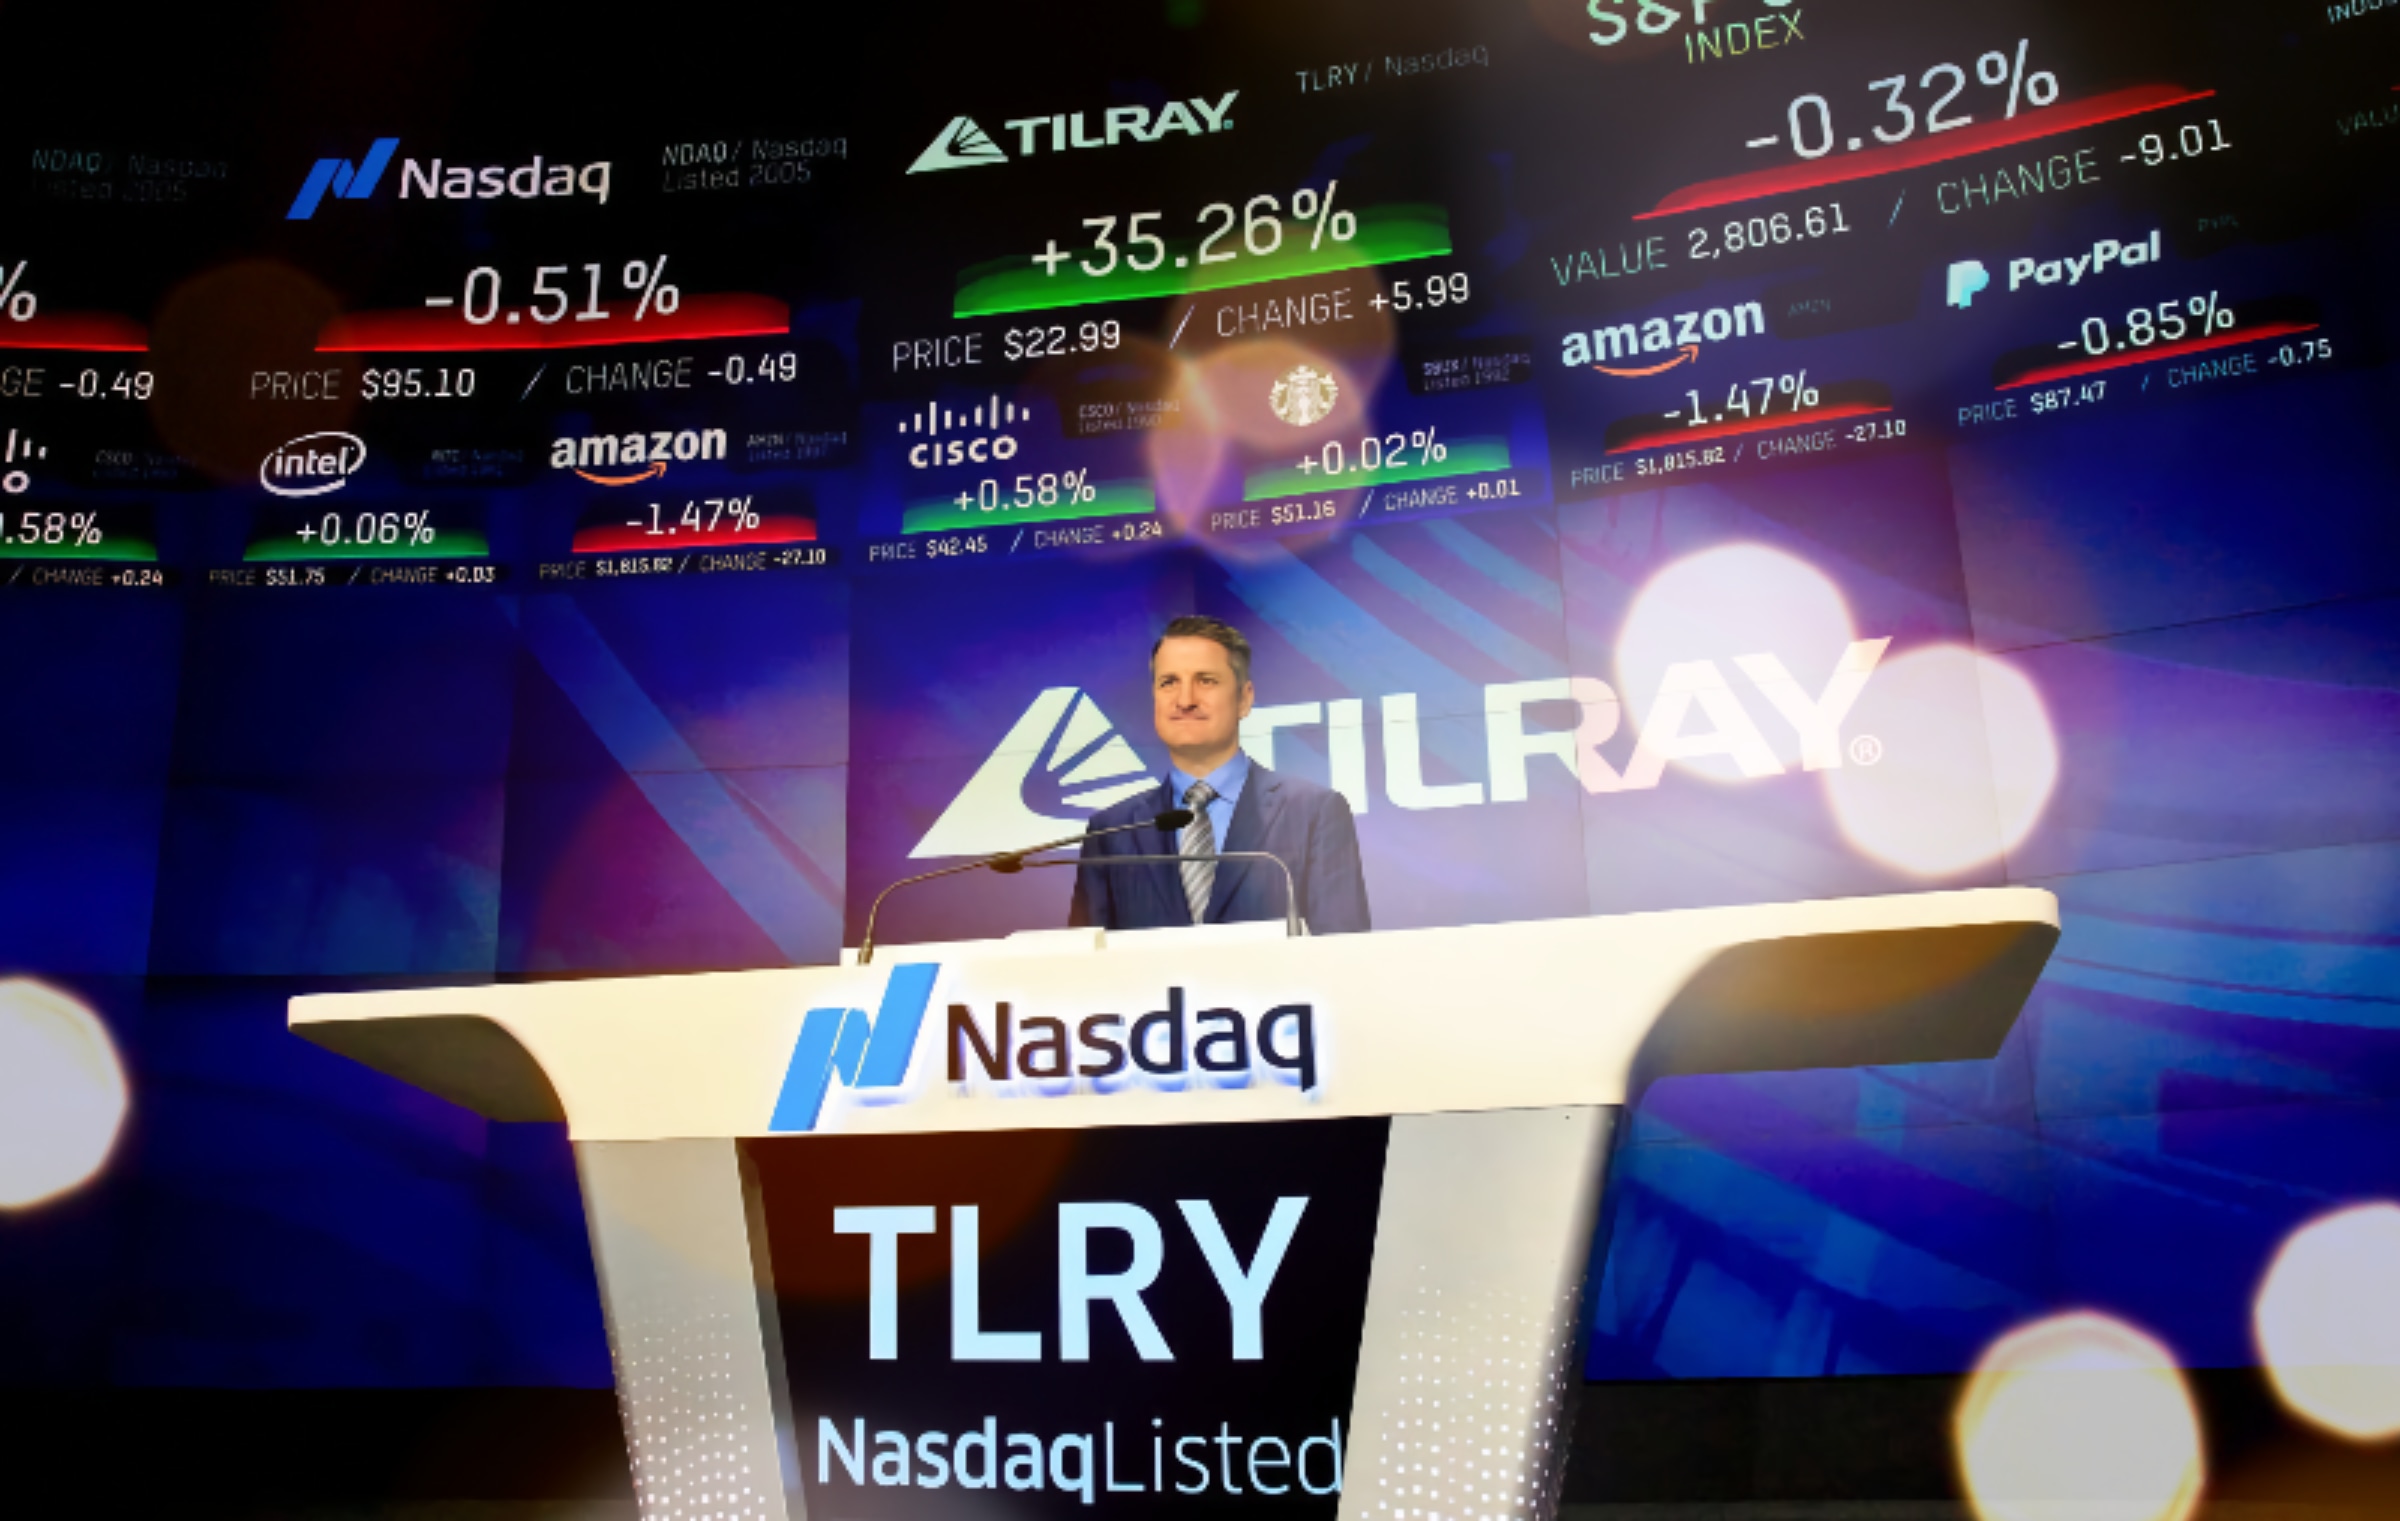 Tilray lost $1.2 billion last quarter, yet still to buy competitor